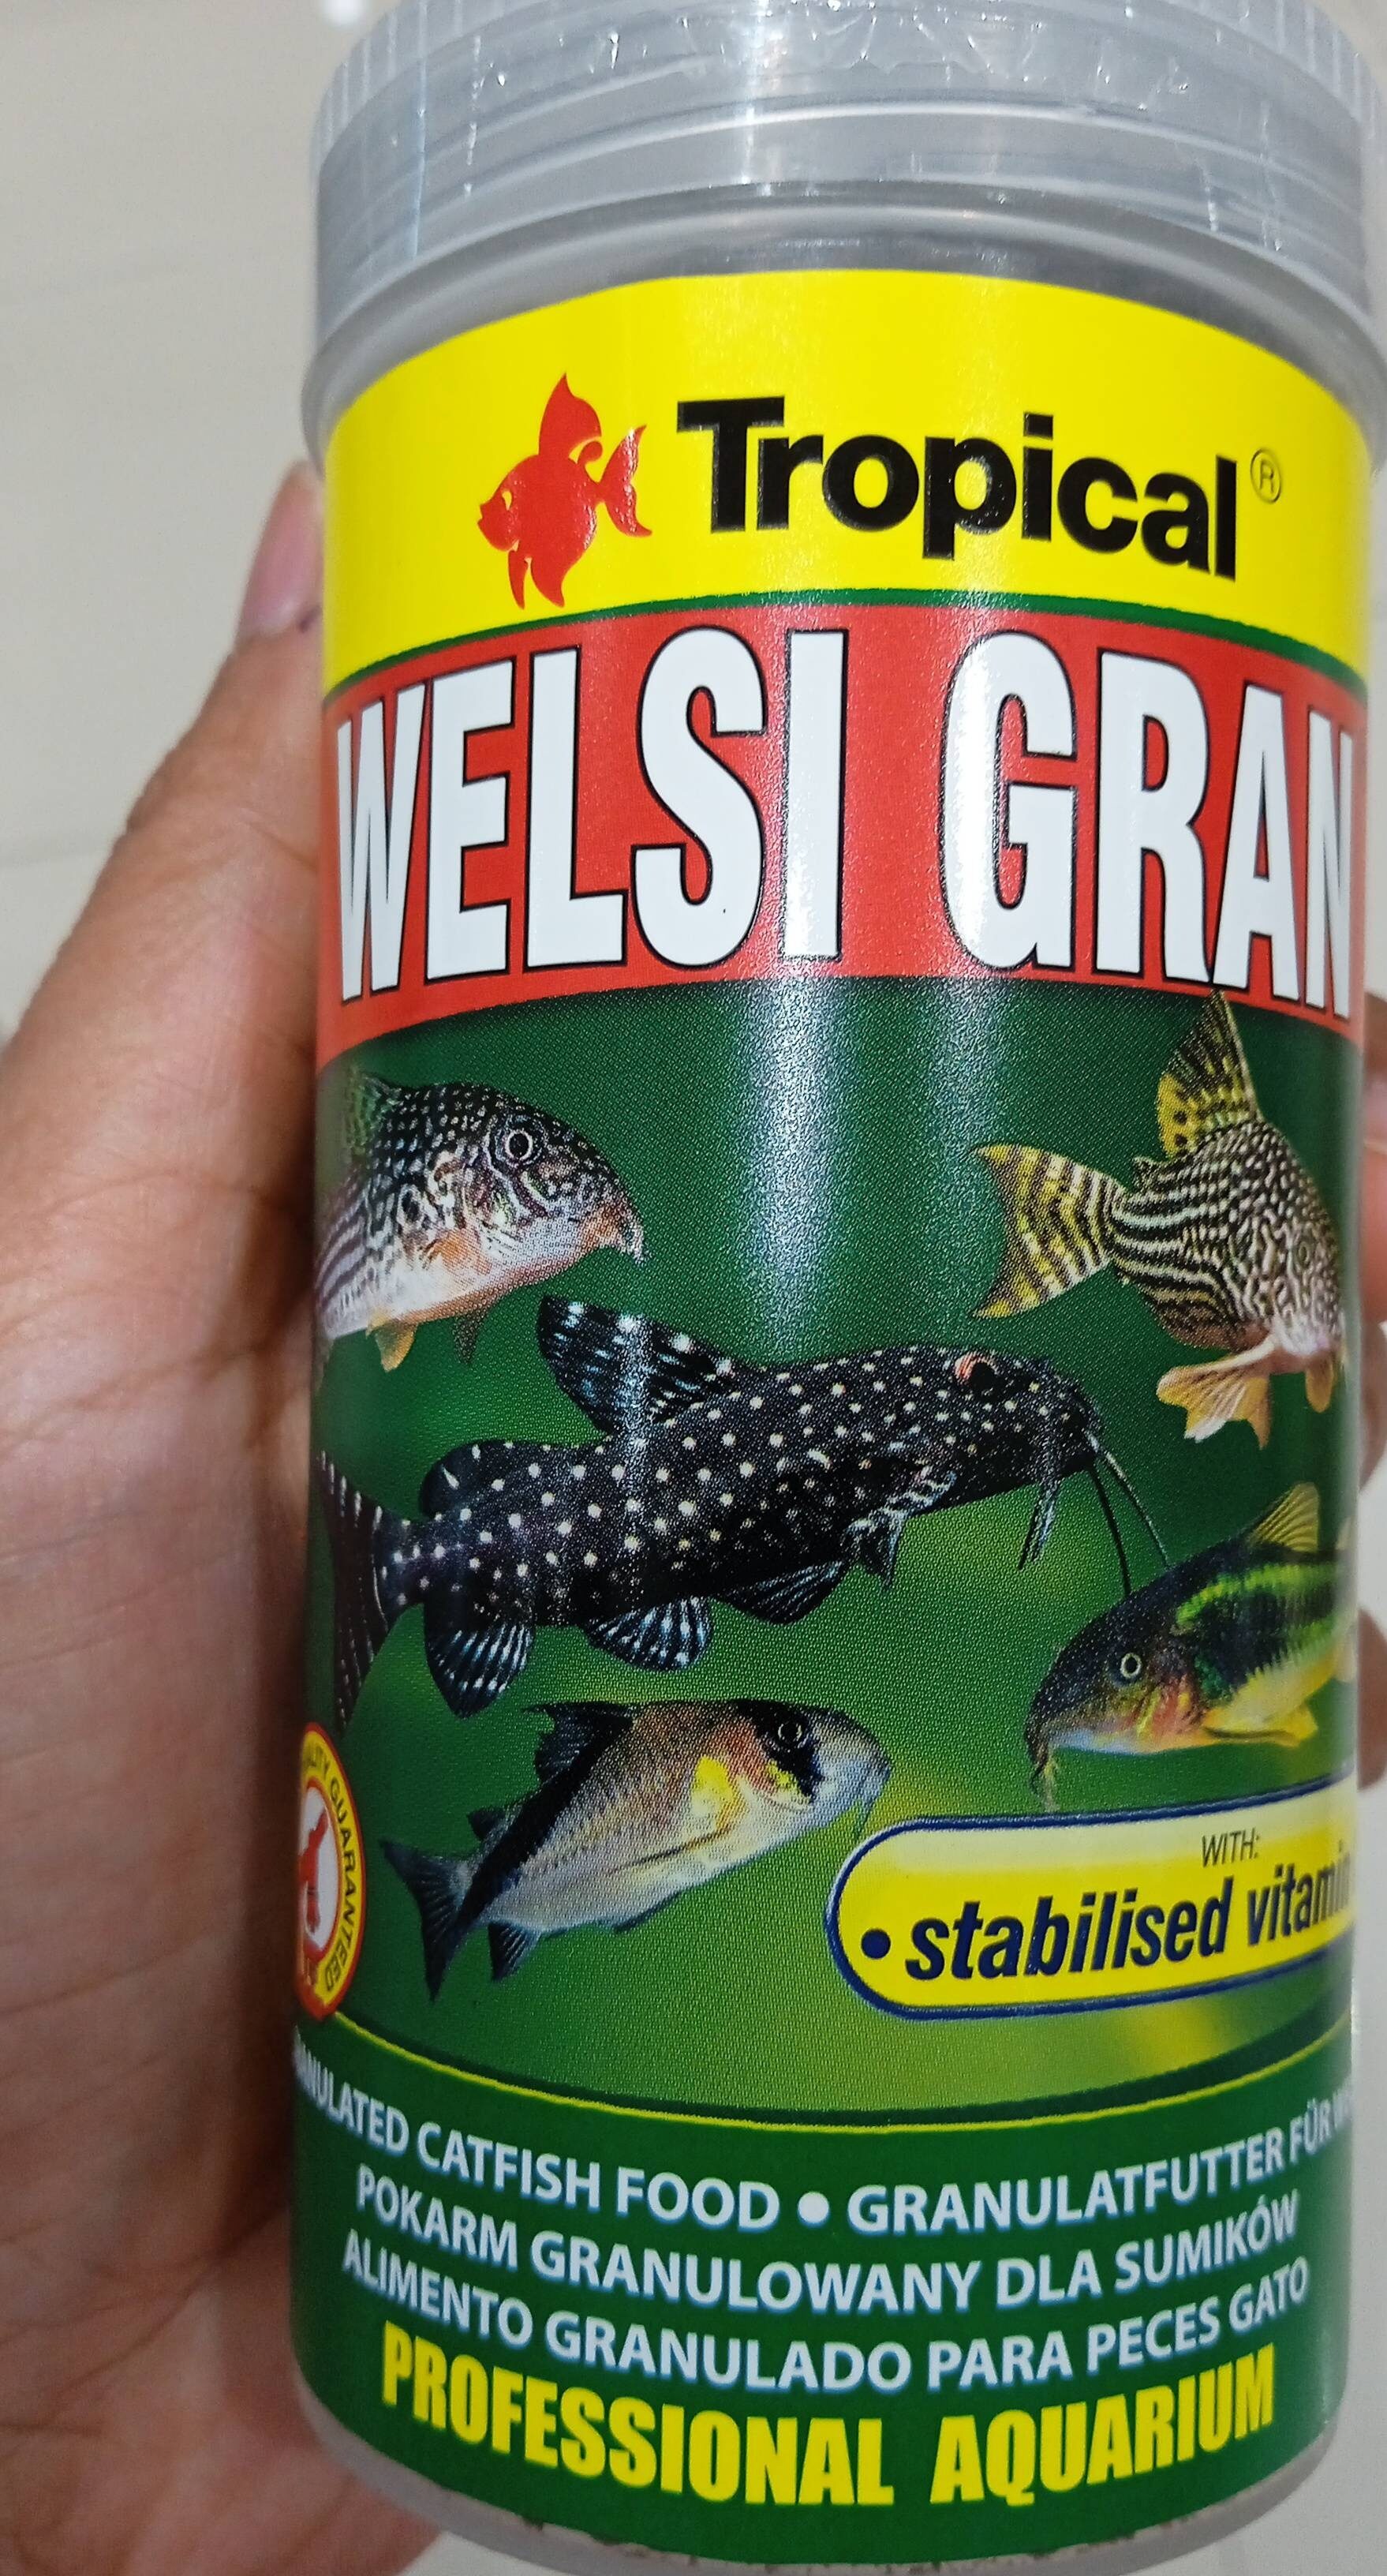 Fish food welsi gran 250ml - Product - id